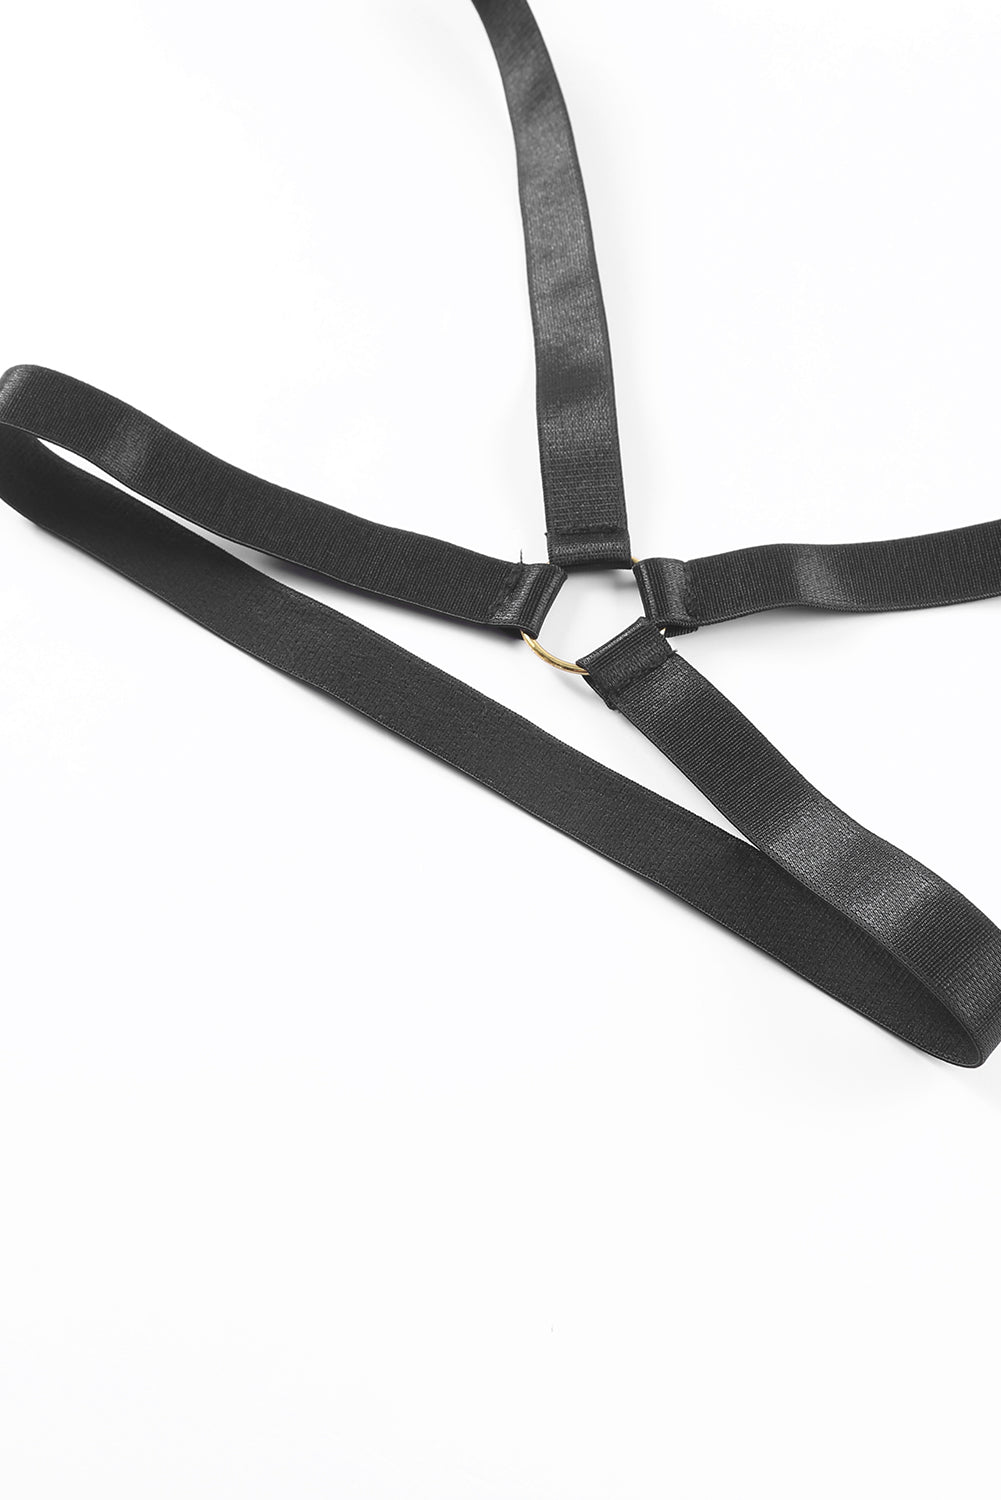 Black Sheer Mesh Strappy Teddy Lingerie with Garter Belt Teddy Lingerie JT's Designer Fashion